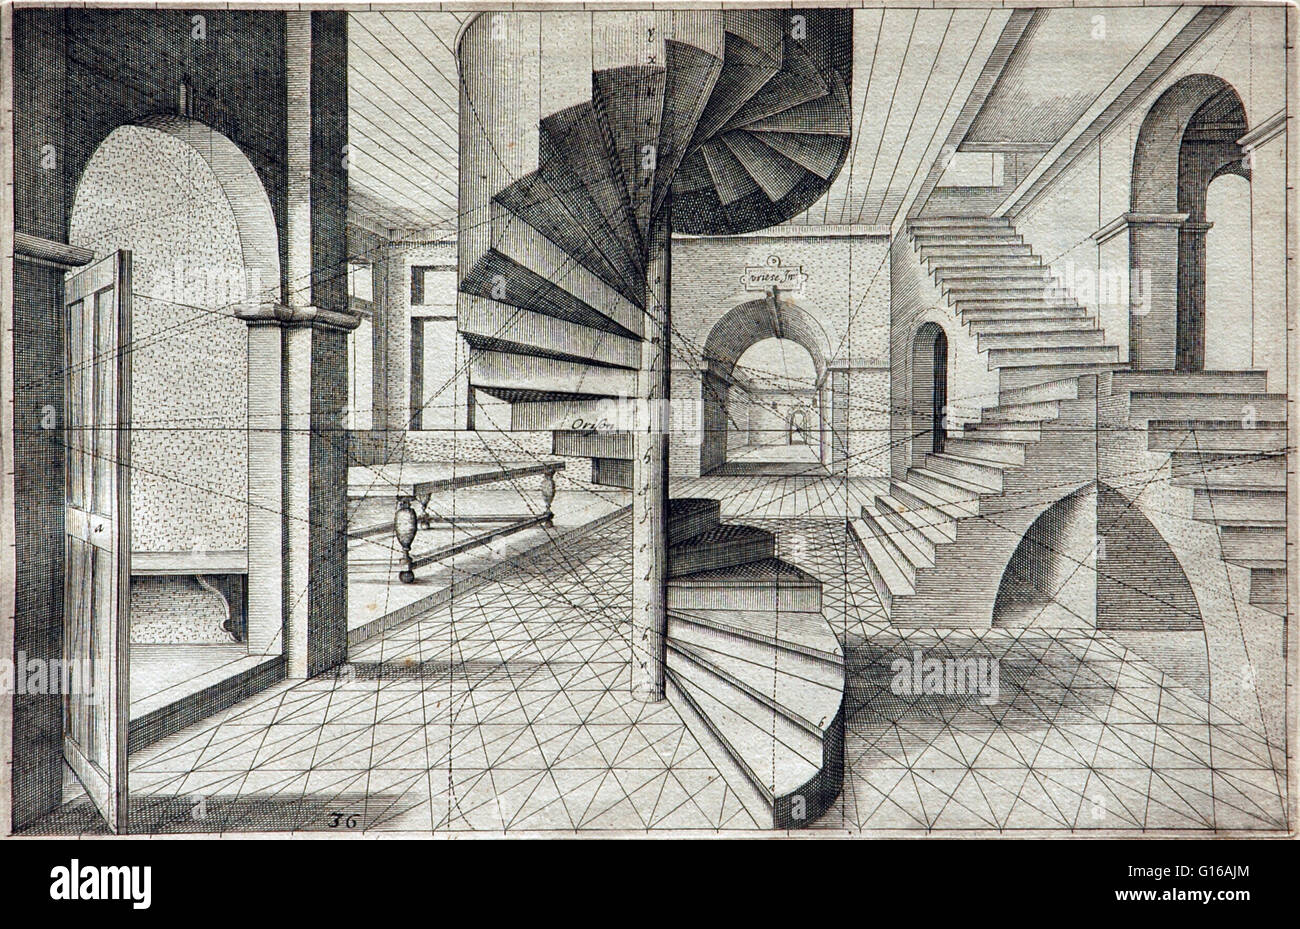 Hans Vredeman de Vries (1527-1607) war ein niederländischer Renaissance-Architekt, Maler und Ingenieur. Er ist bekannt für seine Veröffentlichung im Jahre 1583 auf Gartengestaltung und seine Bücher mit vielen Beispielen auf Ornamente (1565) und Perspektive (1604). Perspektive, in Zusammenhang mit v Stockfoto